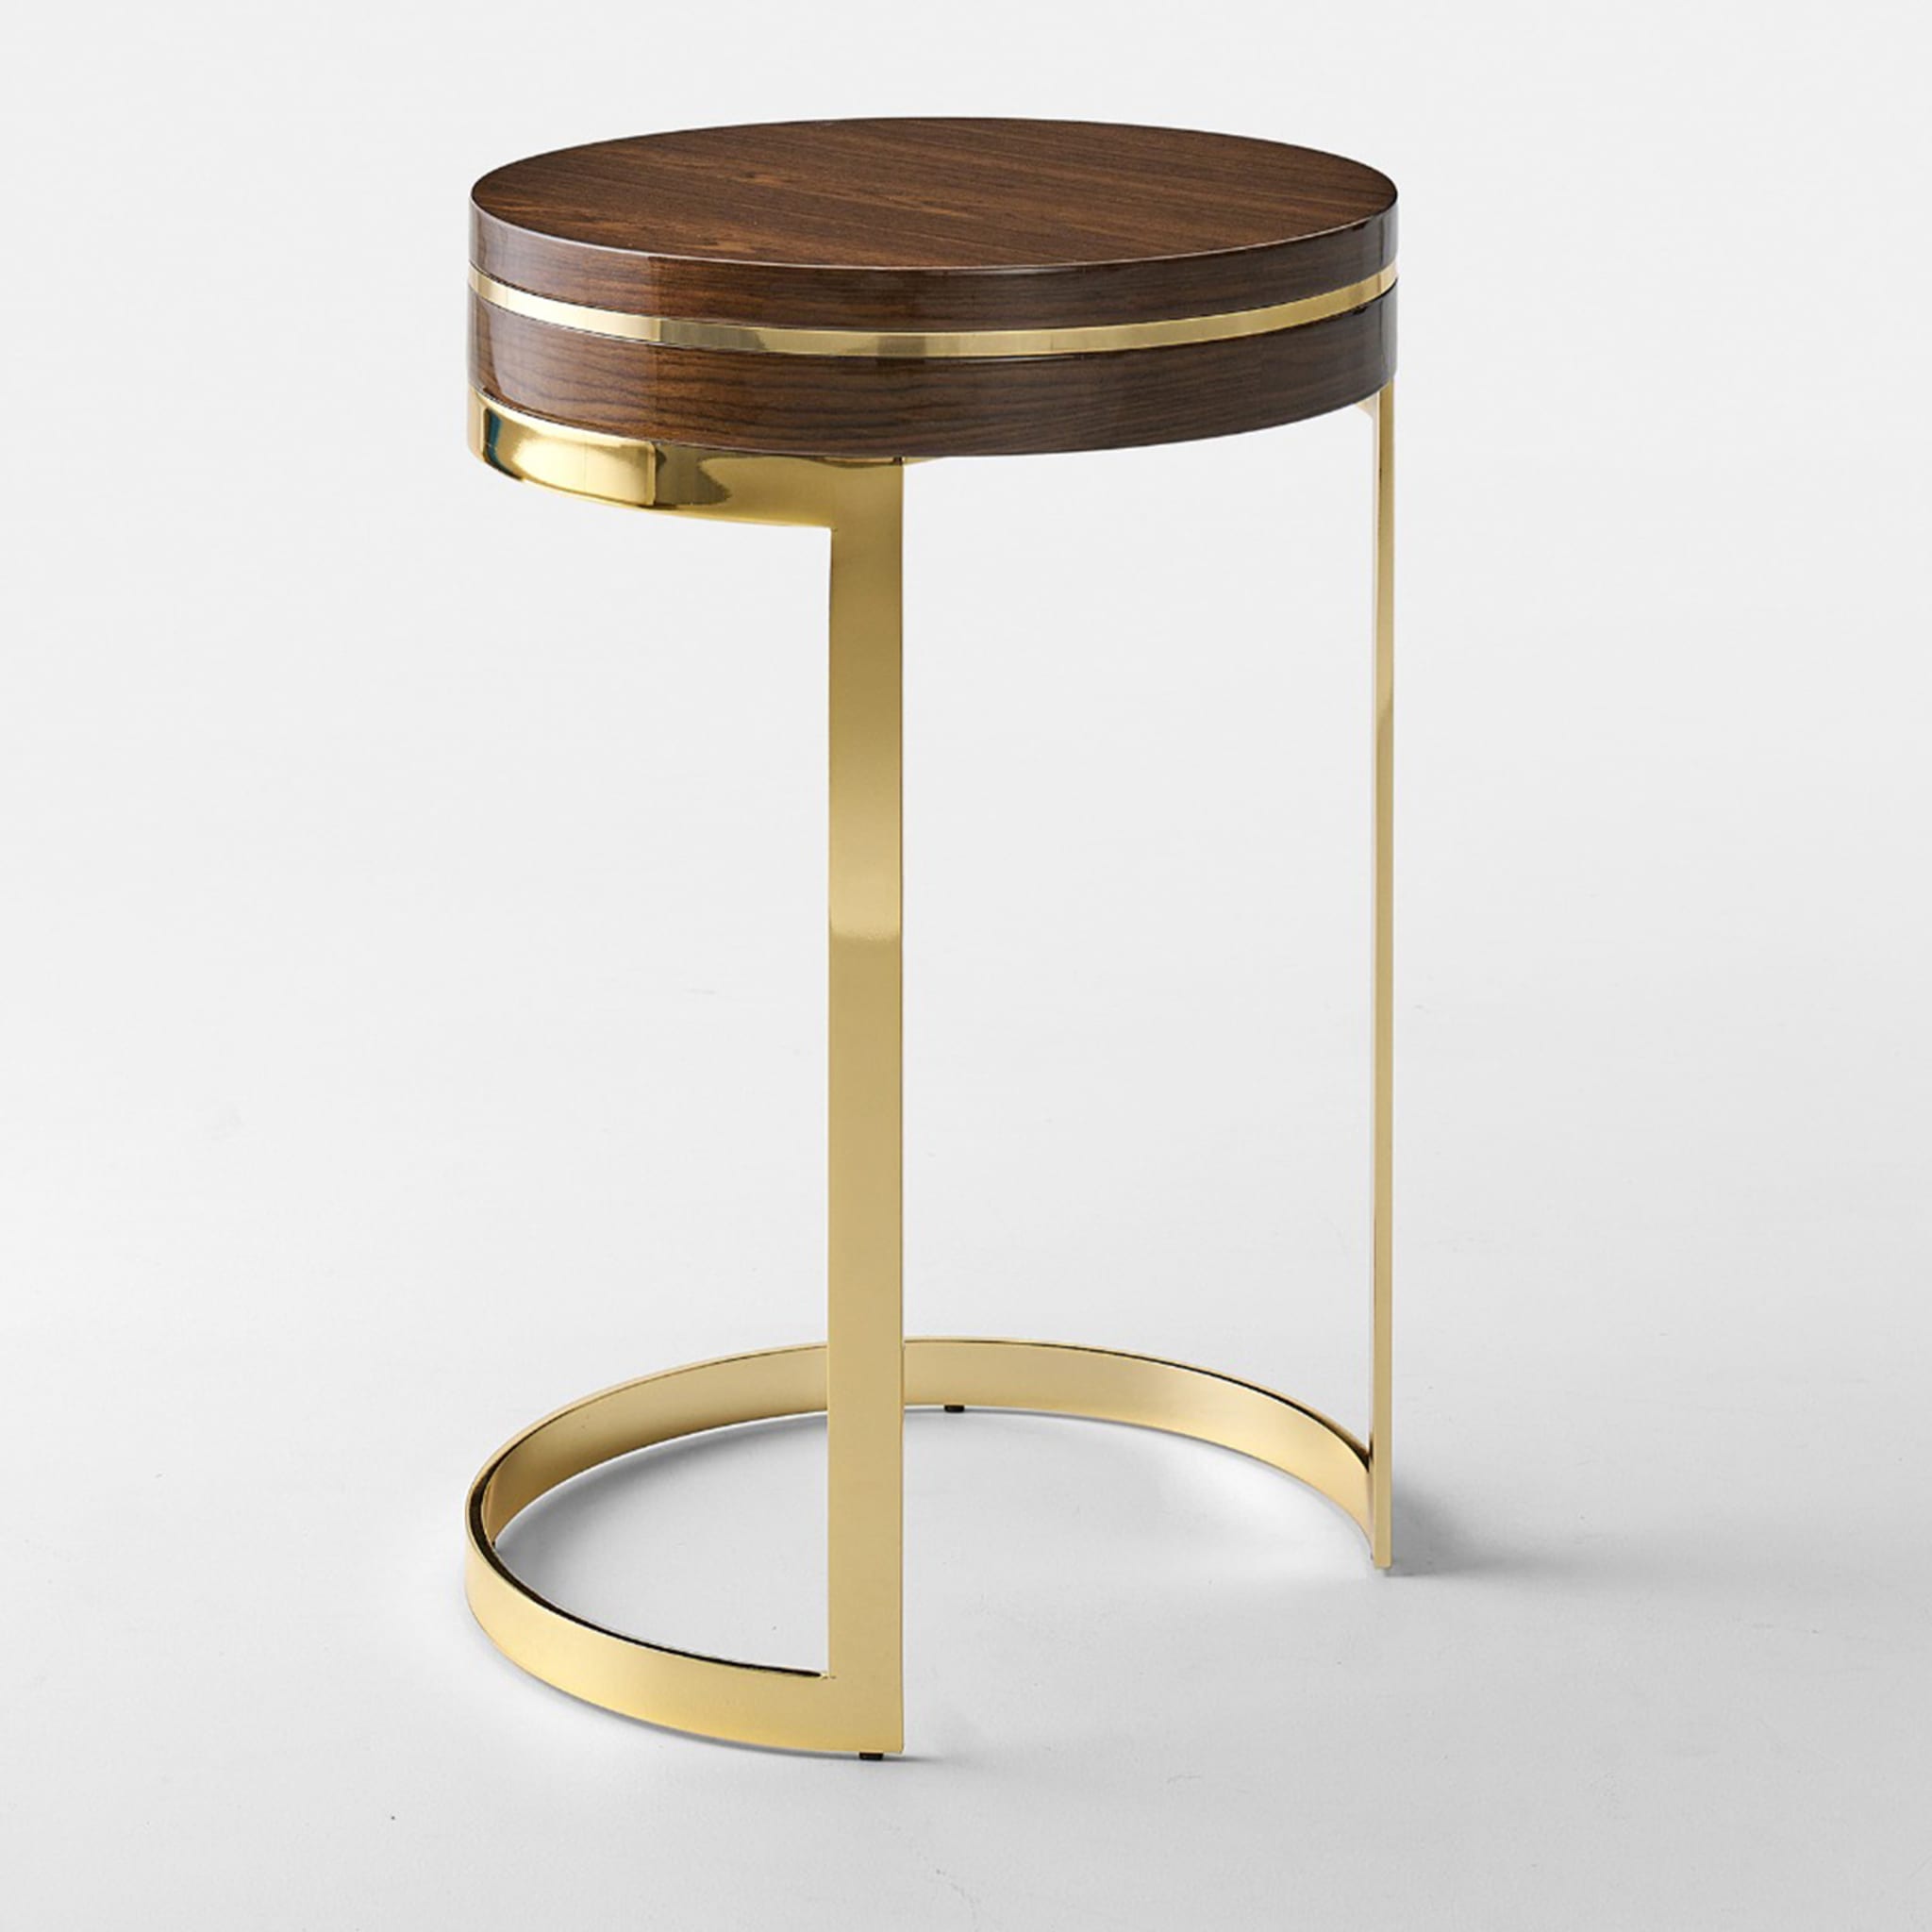 Topazio Round Golden & Walnut Side Table - Alternative view 1